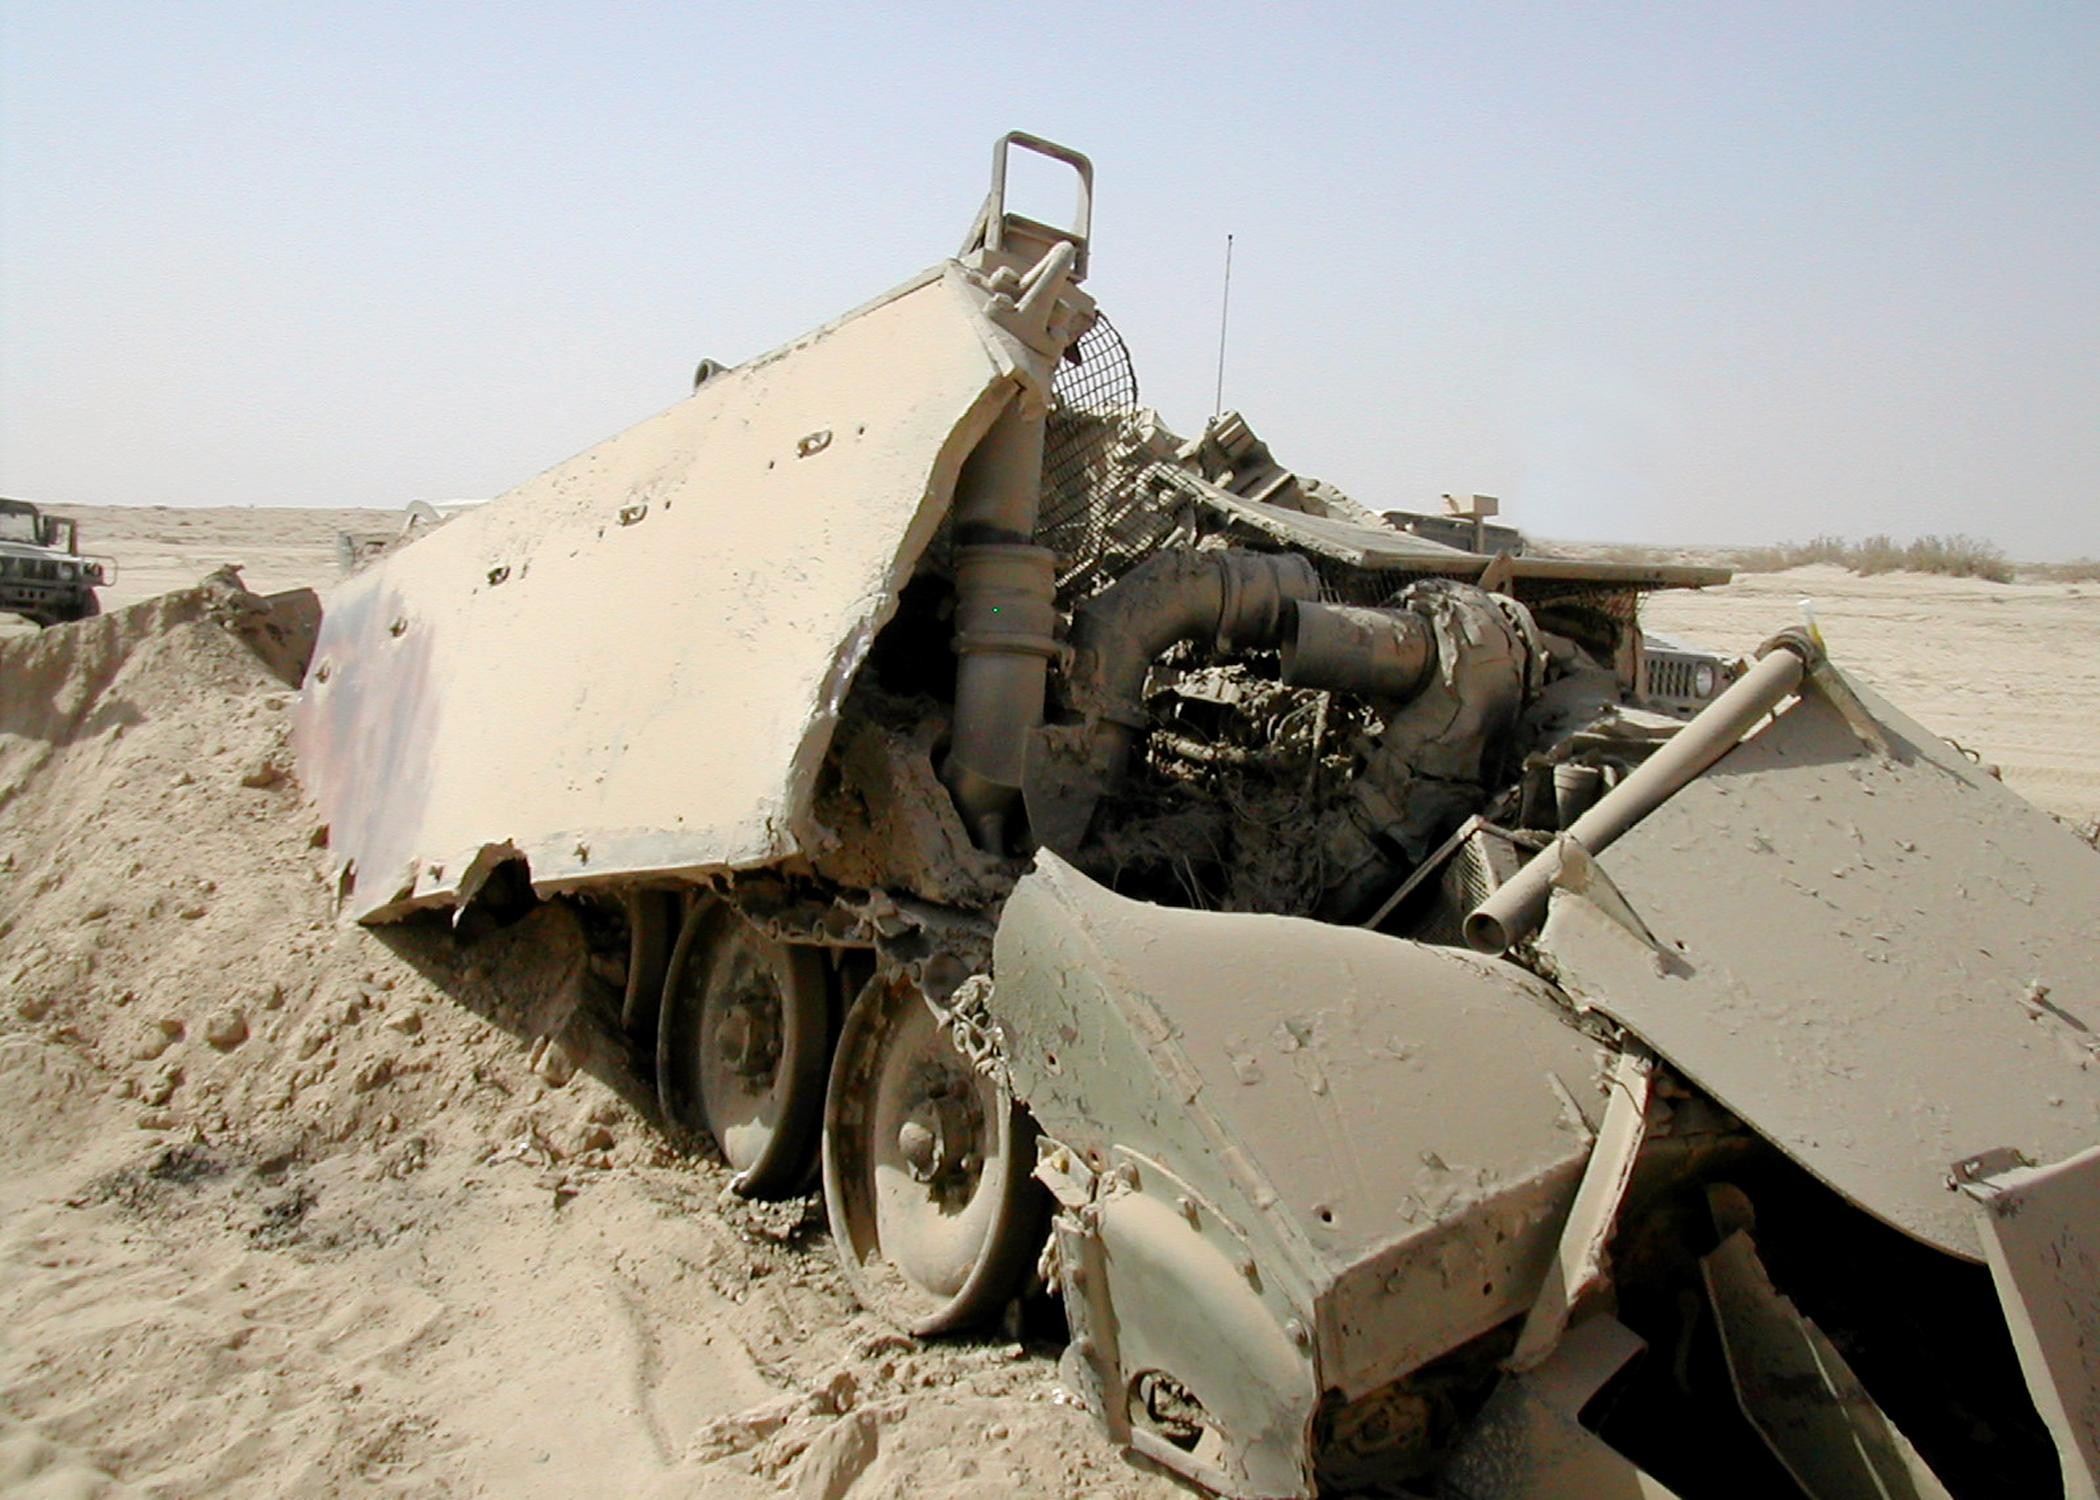 Задать разбитый. БТР м113 в Ираке.